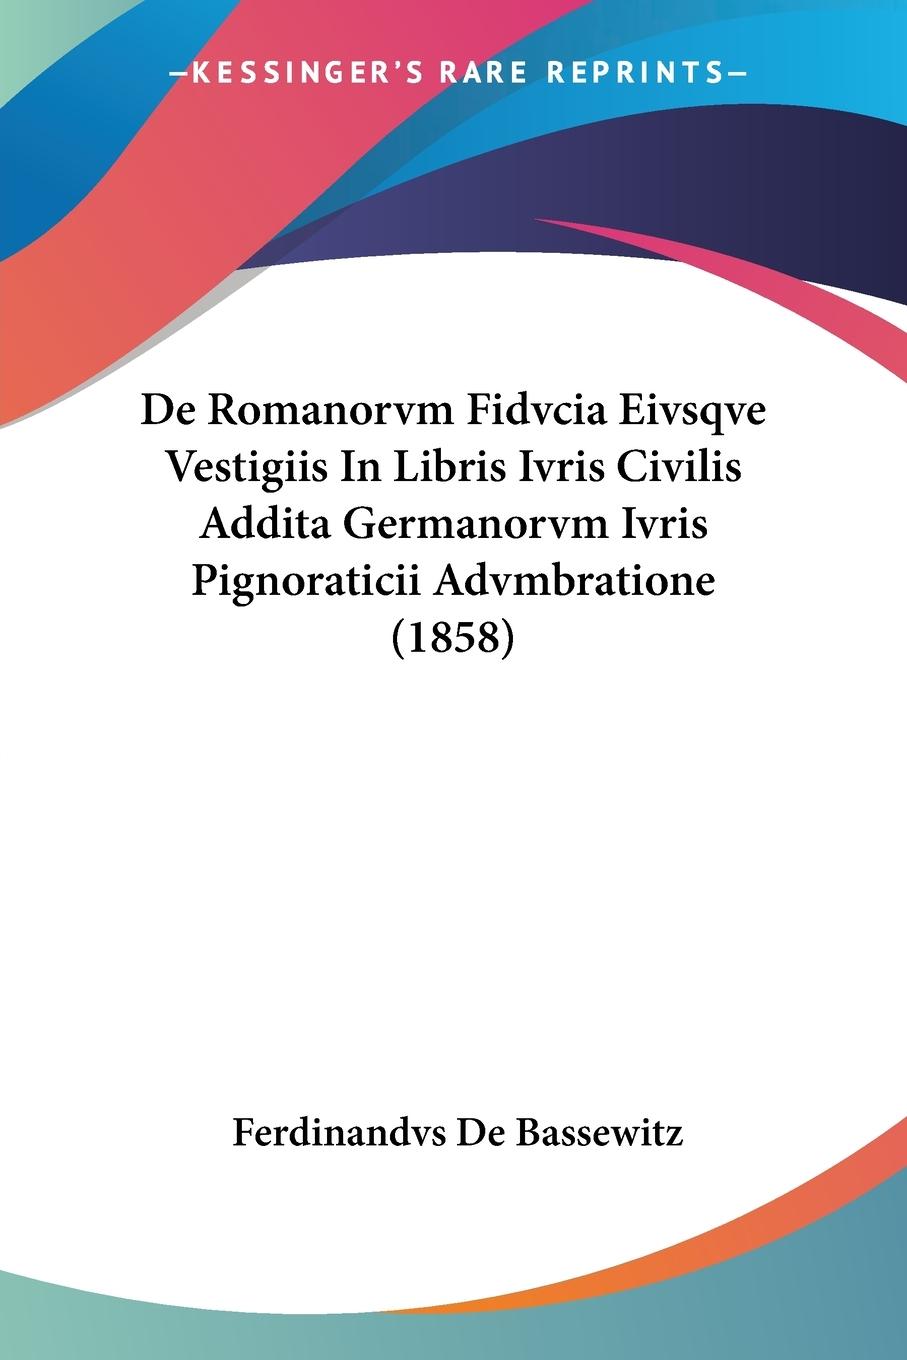 De Romanorvm Fidvcia Eivsqve Vestigiis In Libris Ivris Civilis Addita Germanorvm Ivris Pignoraticii Advmbratione (1858) - De Bassewitz, Ferdinandvs